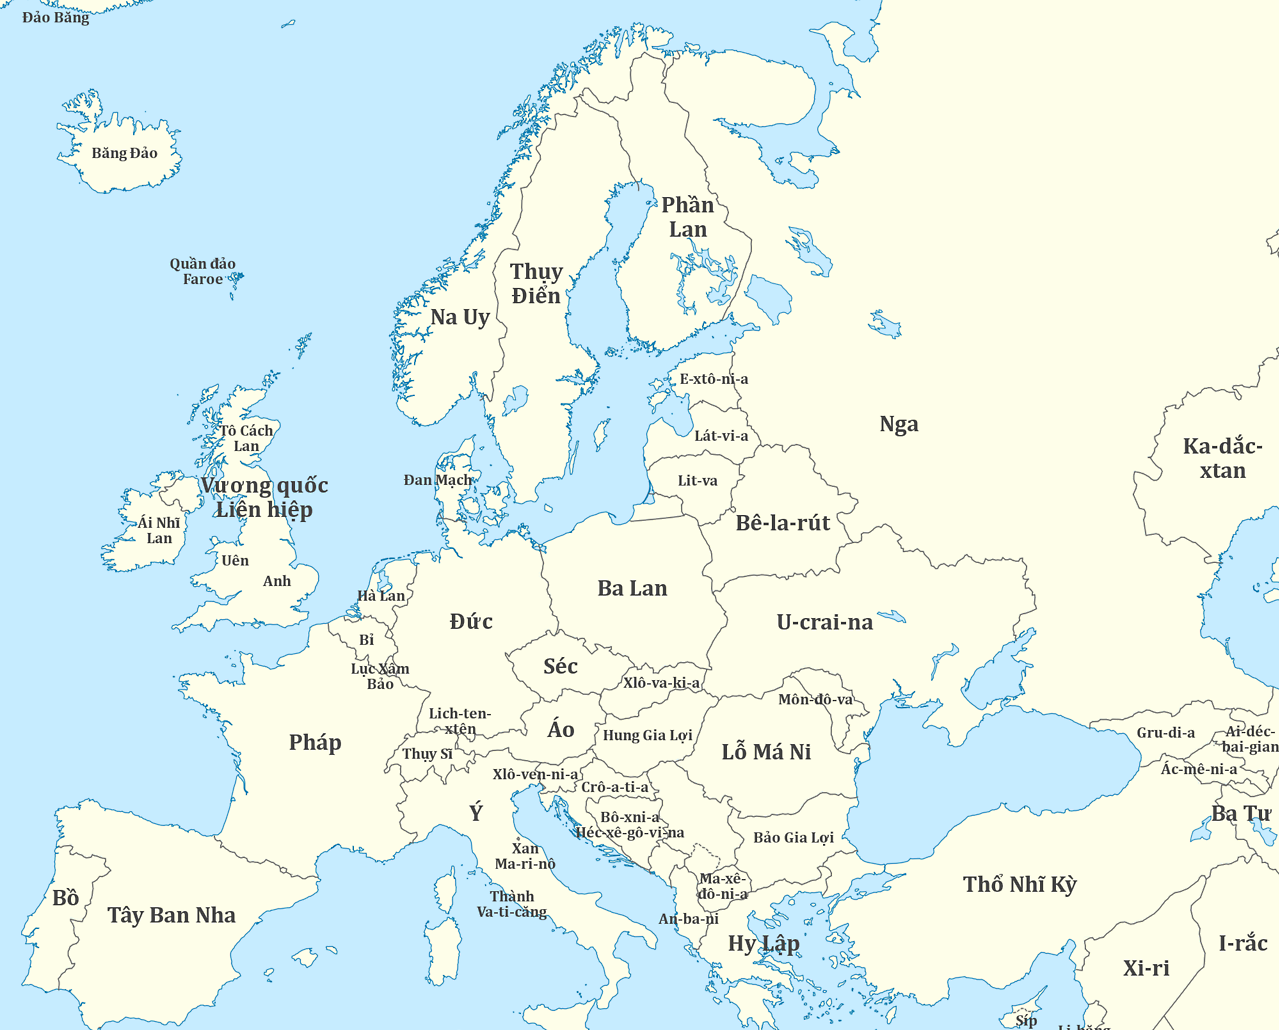 Европейский 16 на карте